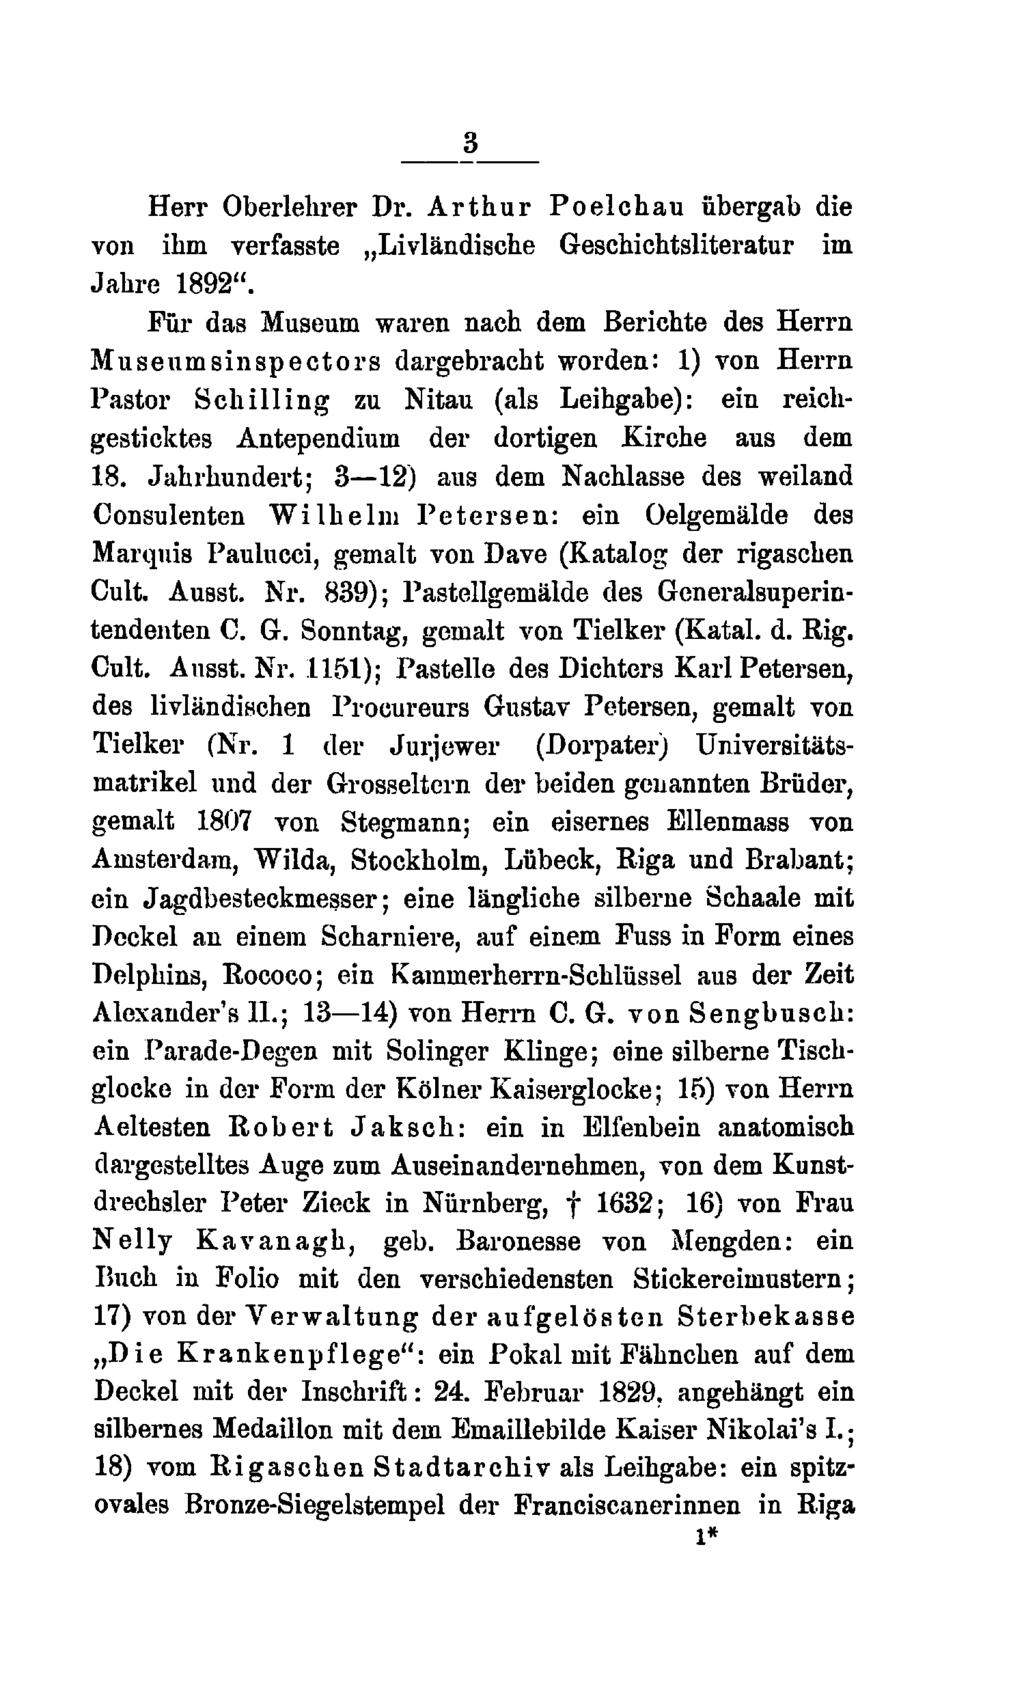 3 Herr Oberlehrer Dr. Arthur Poelchau übergab die von ihm verfasste Livländische Geschichtsliteratur im Jahre 1892".